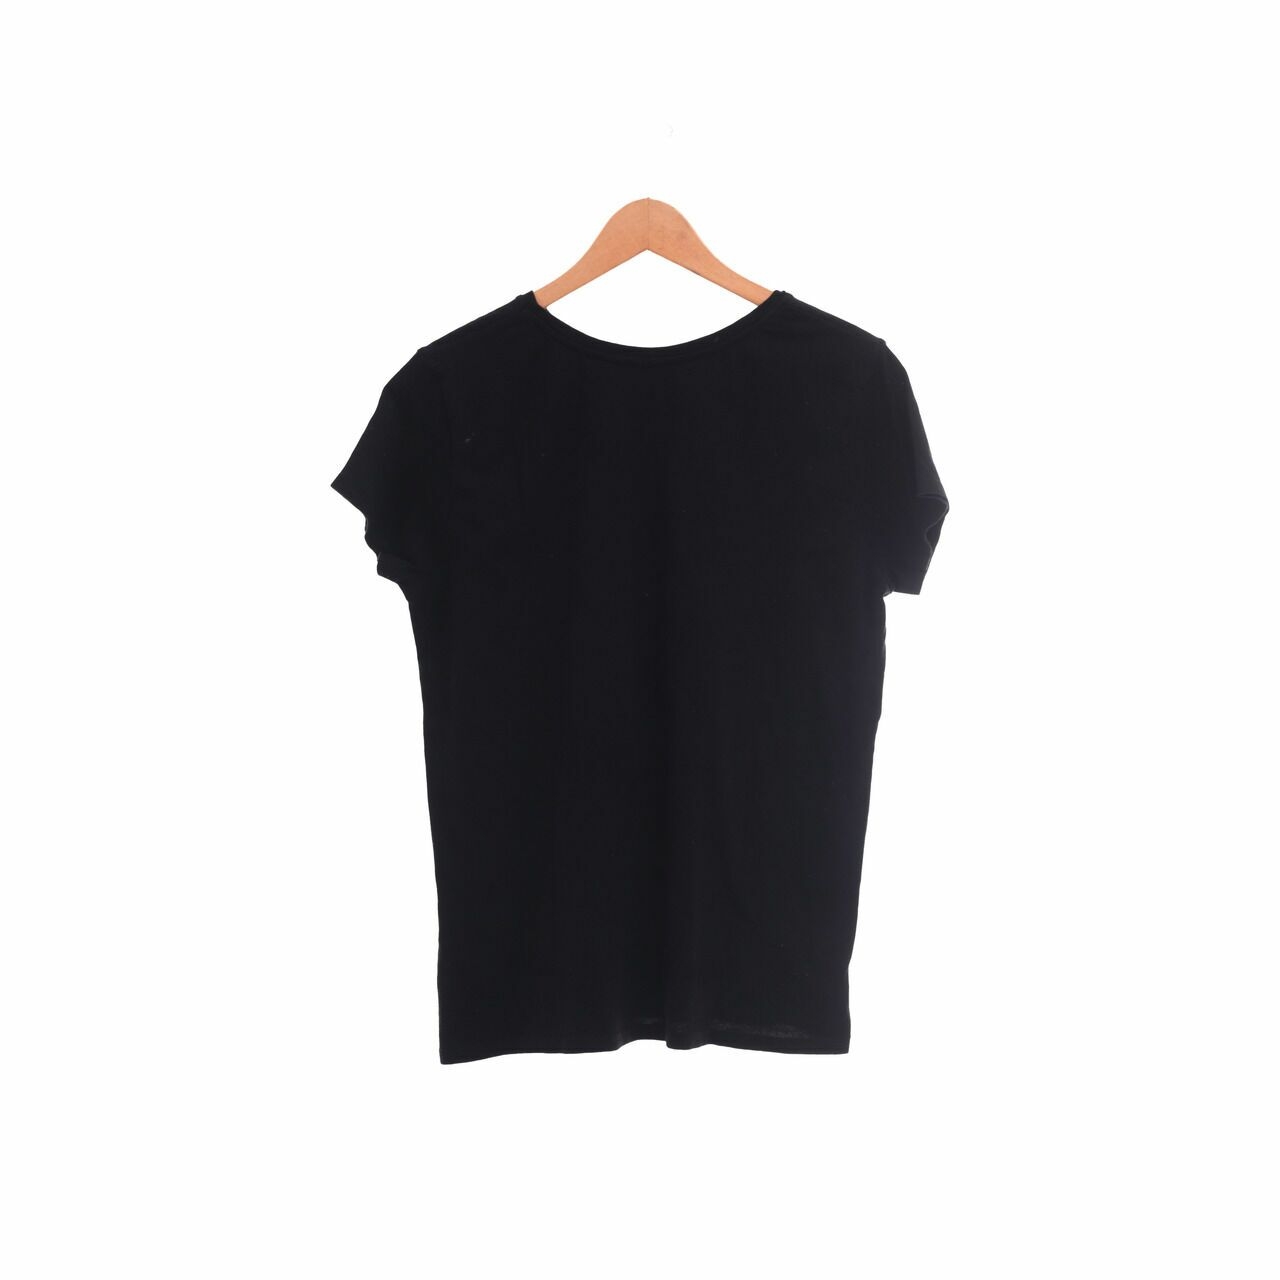 Zara Black T-shirt